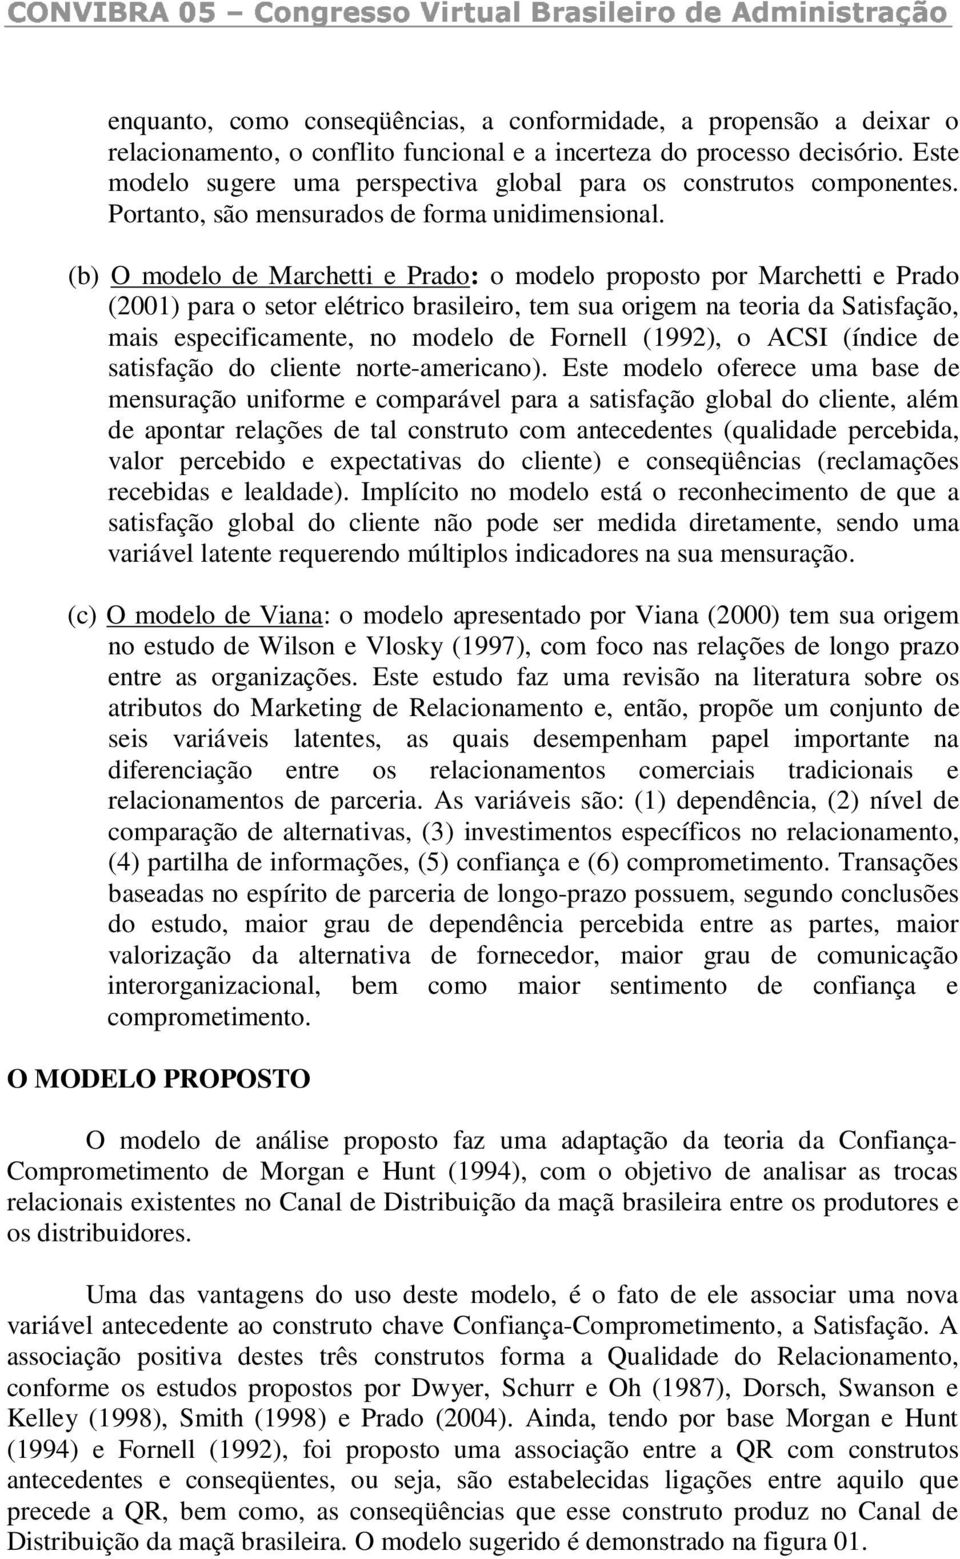 (b) O modelo de Marchetti e Prado: o modelo proposto por Marchetti e Prado (2001) para o setor elétrico brasileiro, tem sua origem na teoria da Satisfação, mais especificamente, no modelo de Fornell